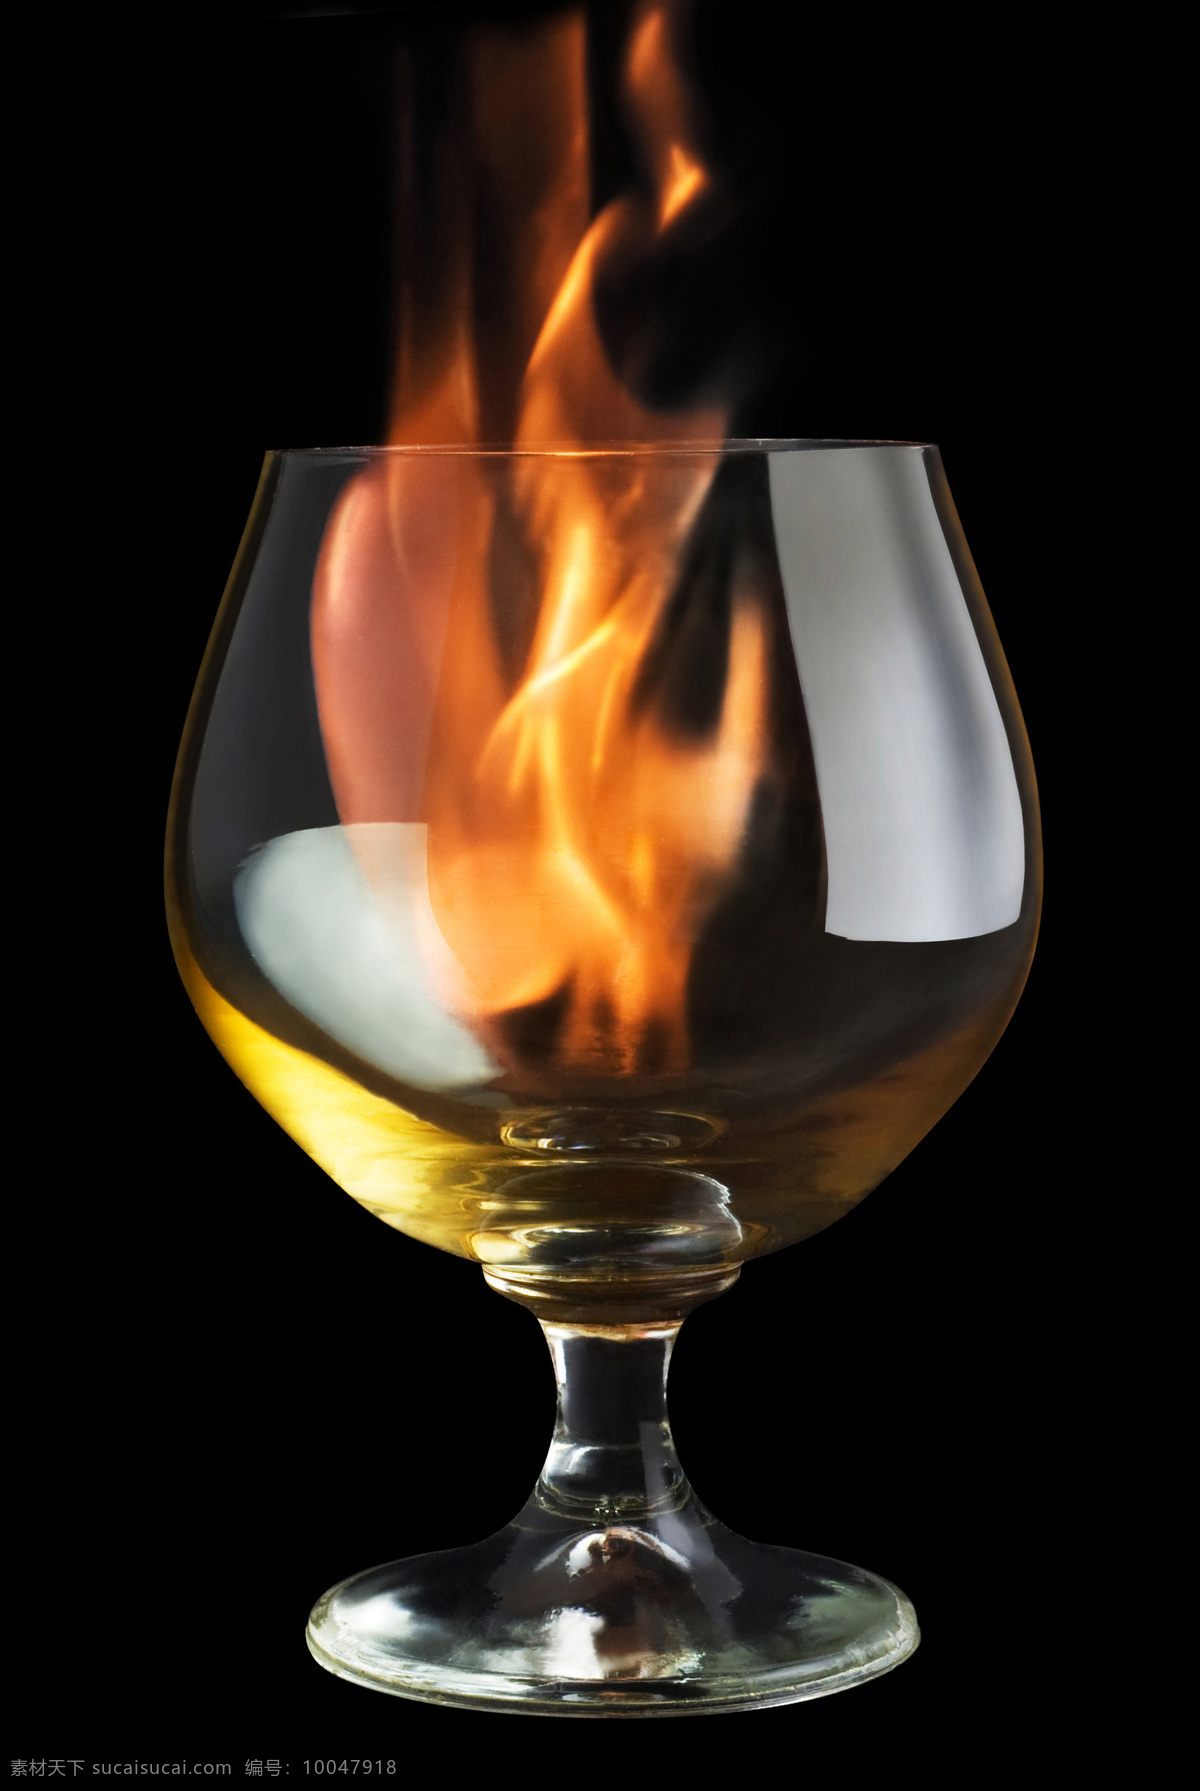 酒杯内的火焰 酒杯 内 火焰 原图 尺寸 燃烧 着火 玻璃杯 红酒杯 精品图片 实用图片 精美图片 印刷适用 高清图片 创意图 摄影图库